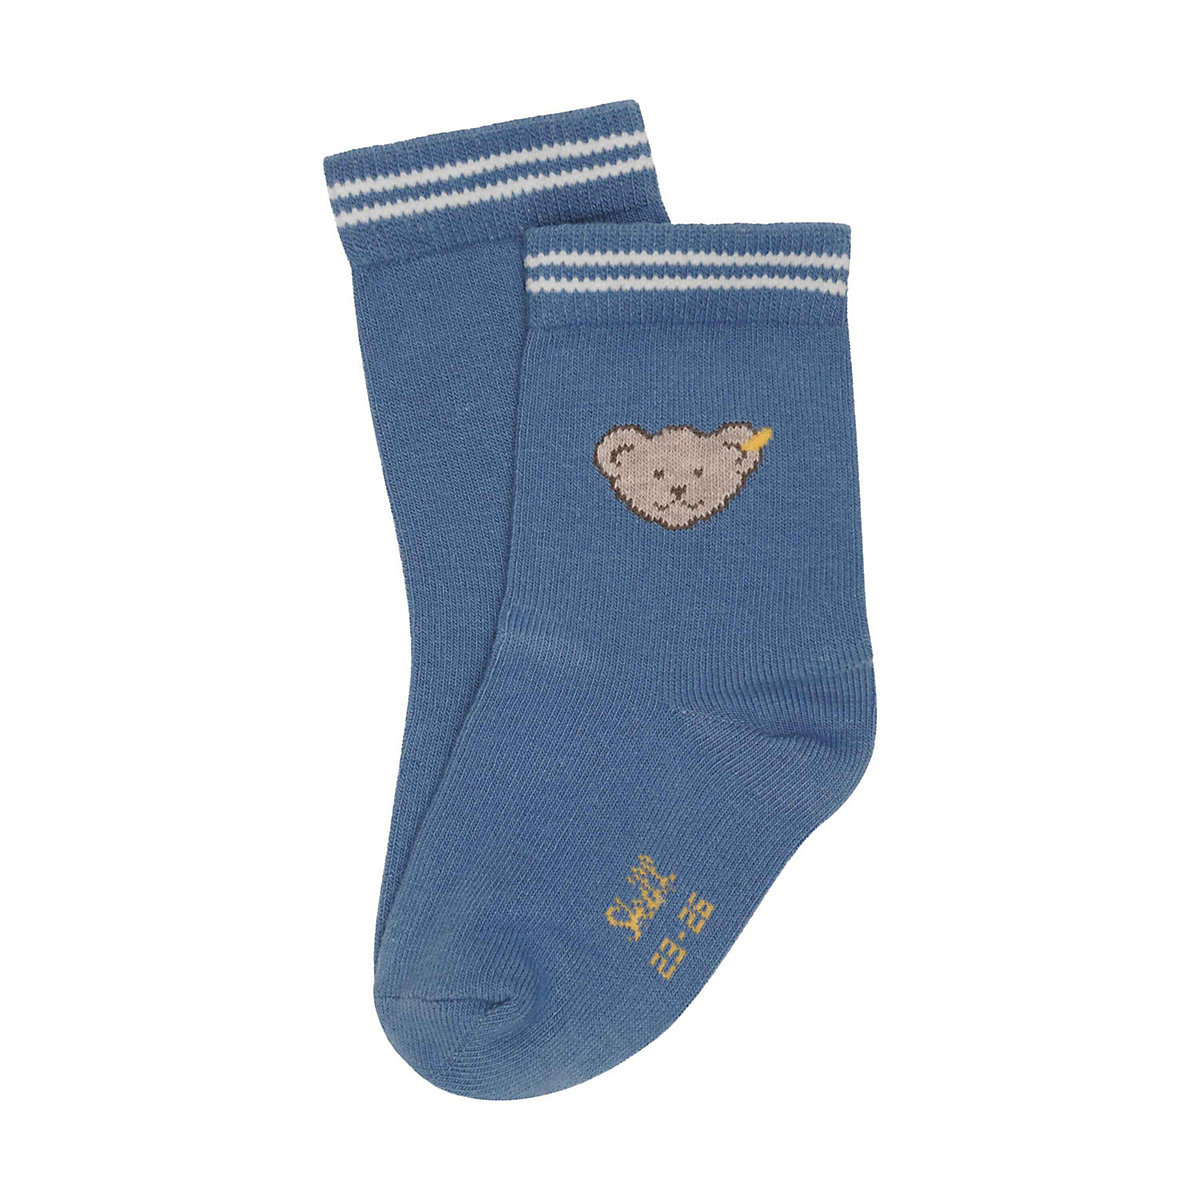 Steiff Socken Basic aus Baumwollstrick mit Bündchen Haussocken blau